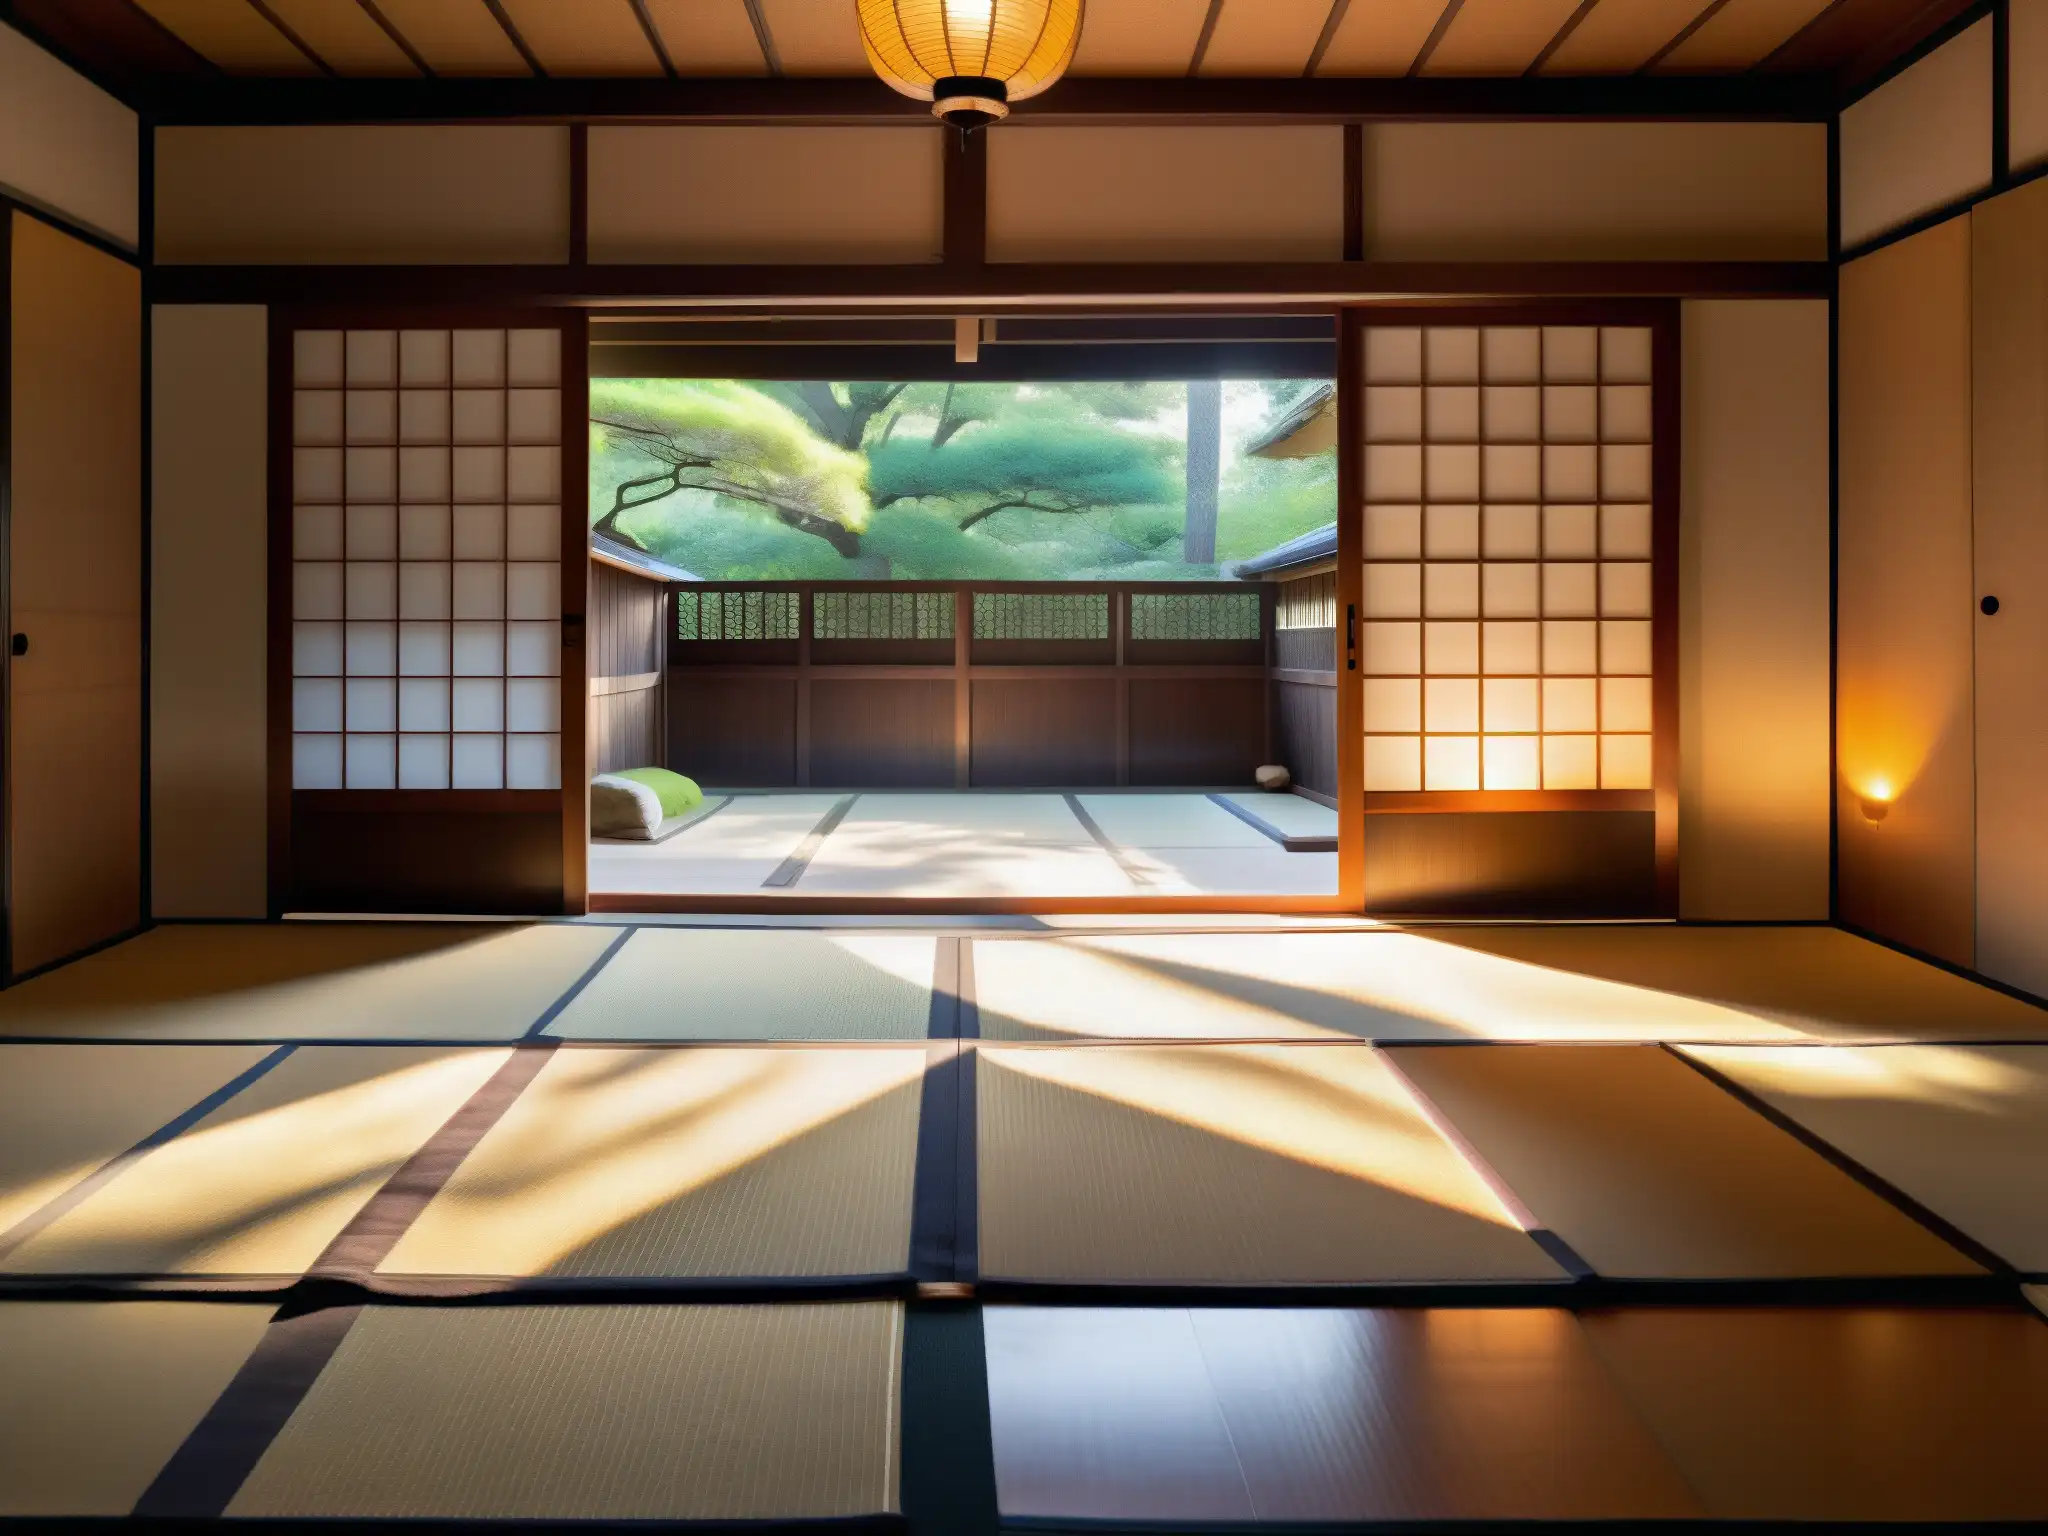 Una habitación tradicional japonesa con la presencia fantasmal de un Zashikiwarashi mito niños fantasmas